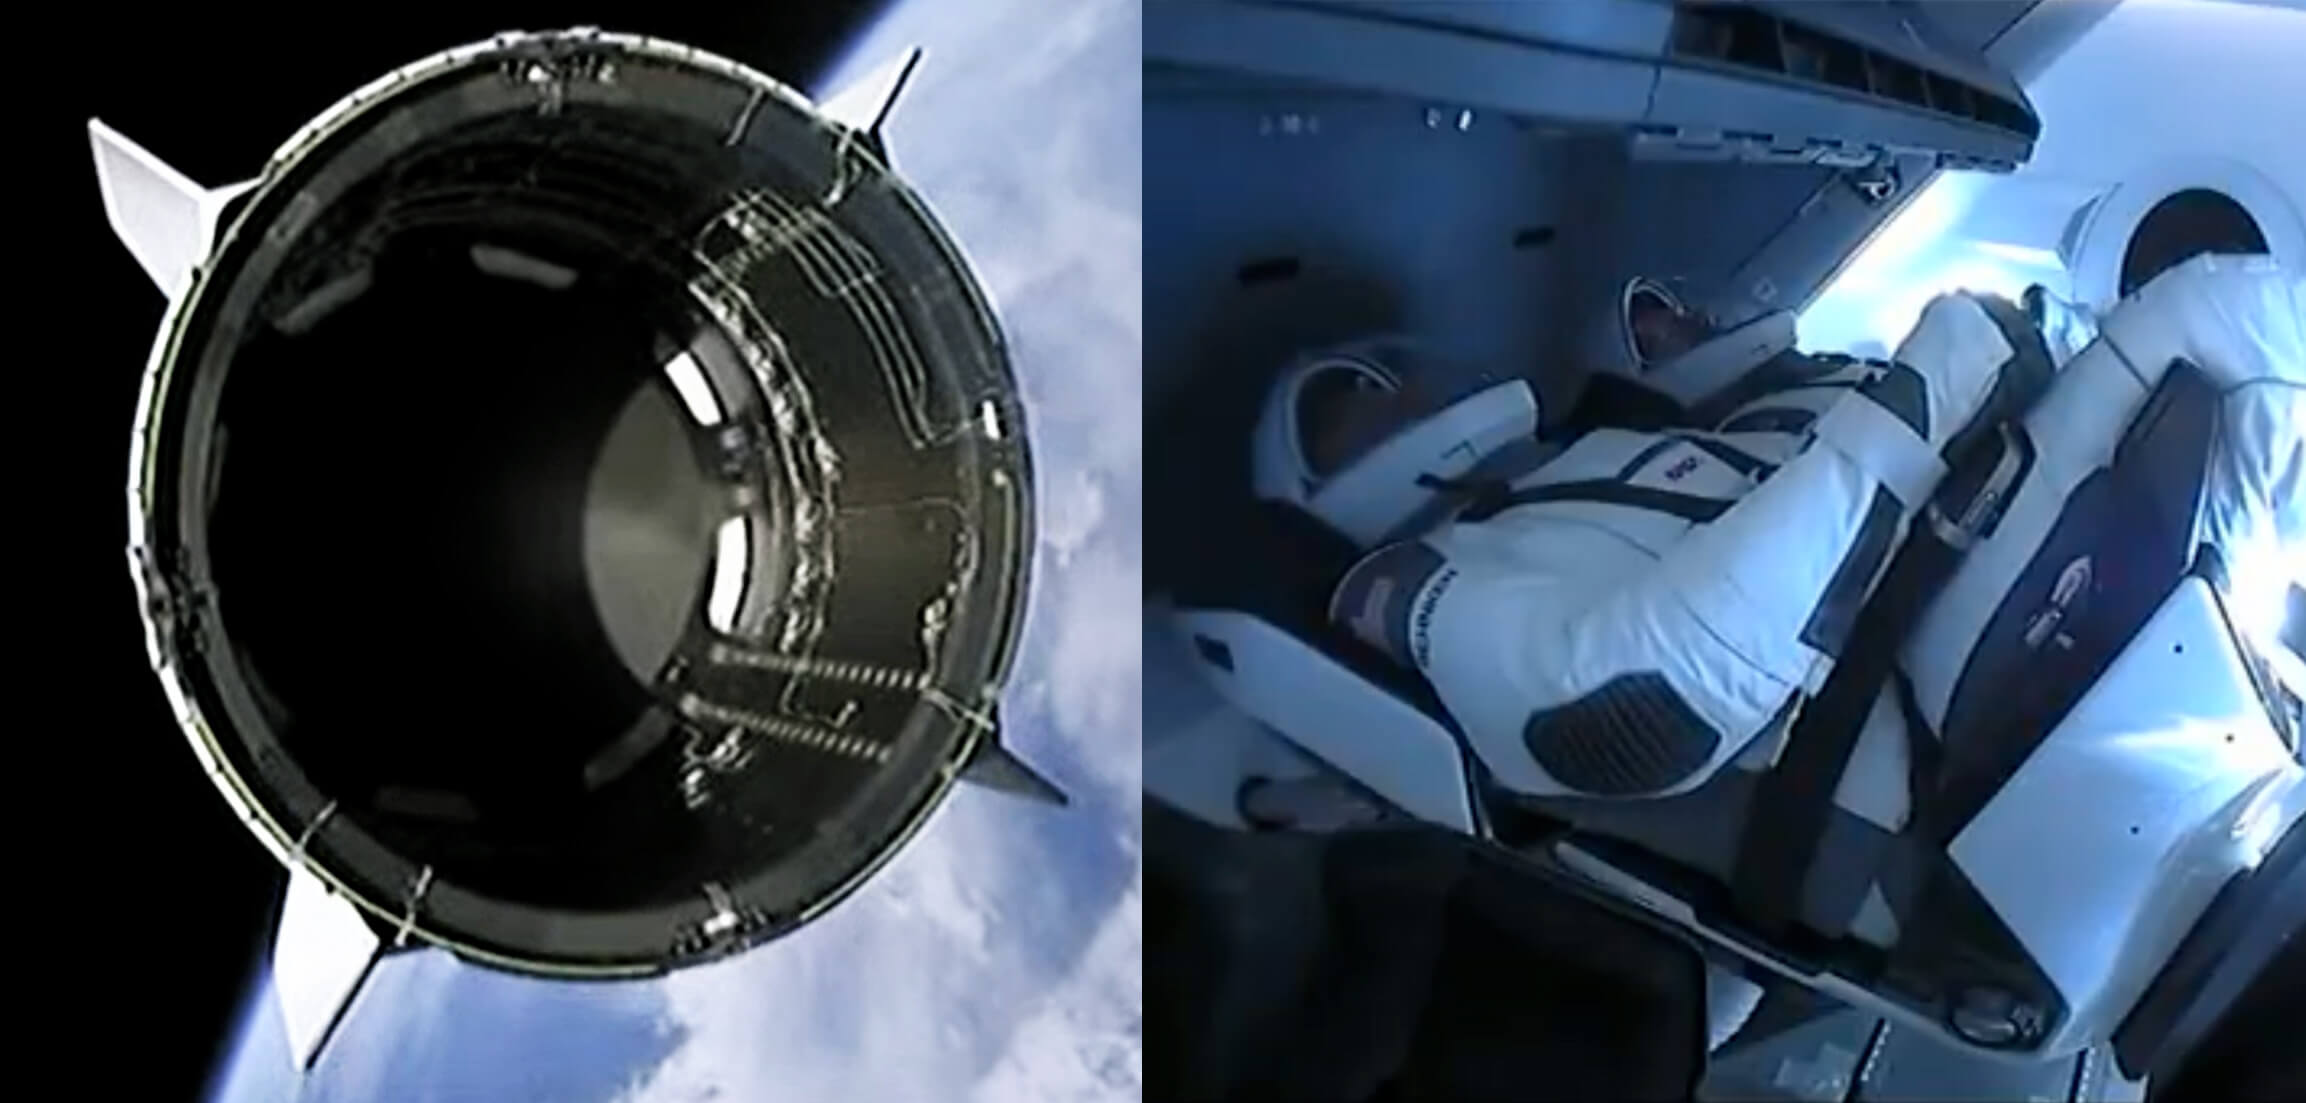 SpaceX सफलतापूर्वक शुरू की एक अंतरिक्ष यान के चालक दल ड्रैगन आईएसएस के लिए